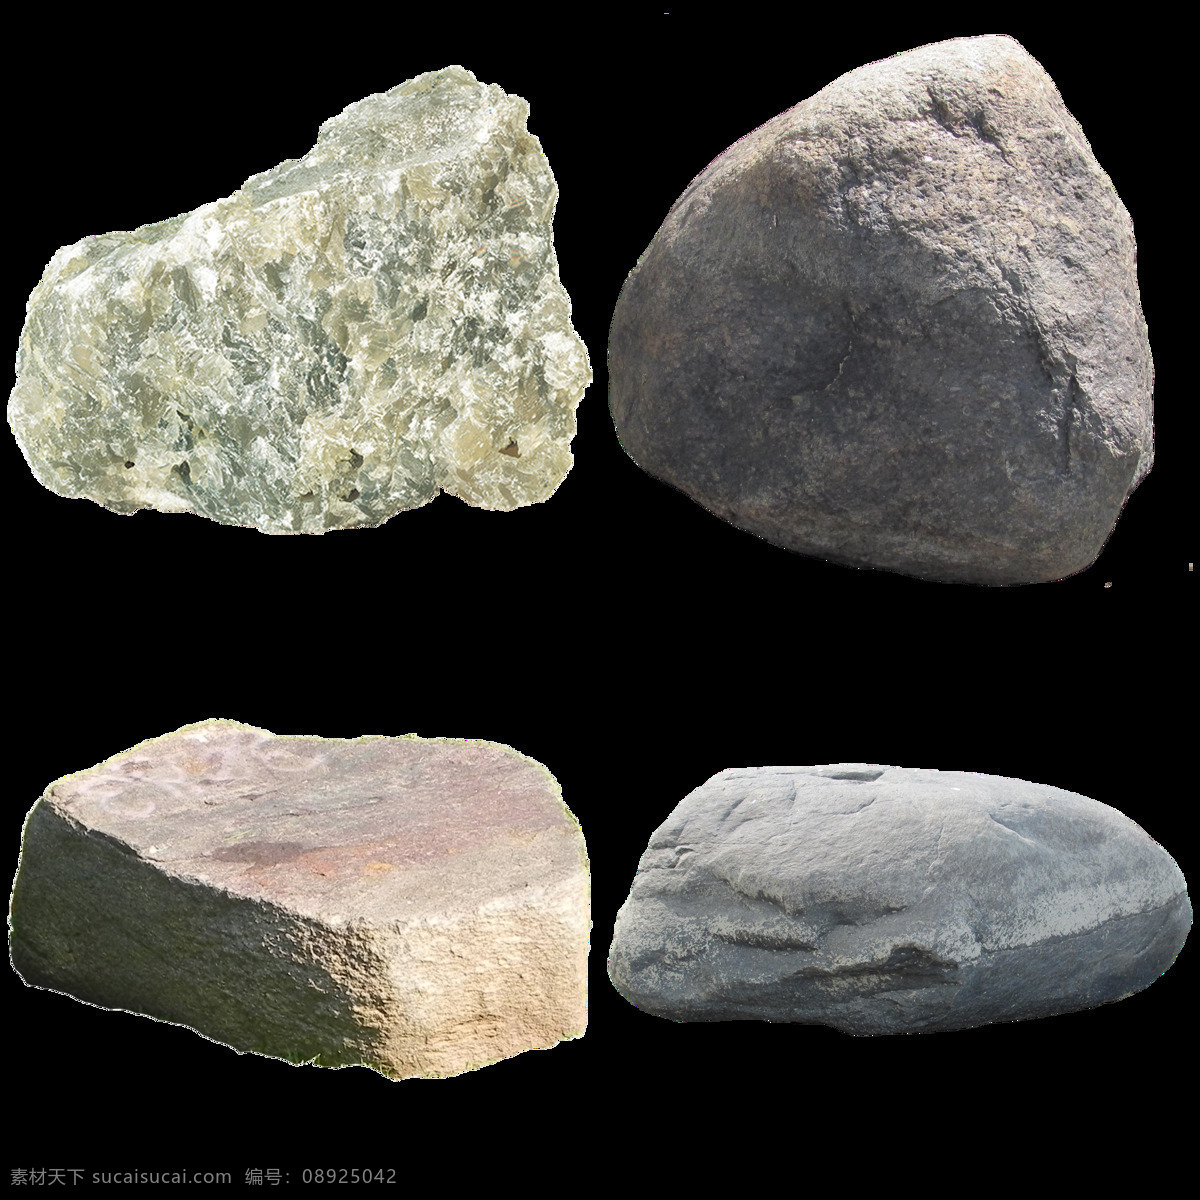 四 块 真实 石头 免 抠 透明 图 层 鹅卵石 石头素材 彩色石头素材 彩石 黑石头 养生石 按摩石 石头图片 鹅卵石石头 彩色鹅卵石 彩色石头 大石头素材 岩石